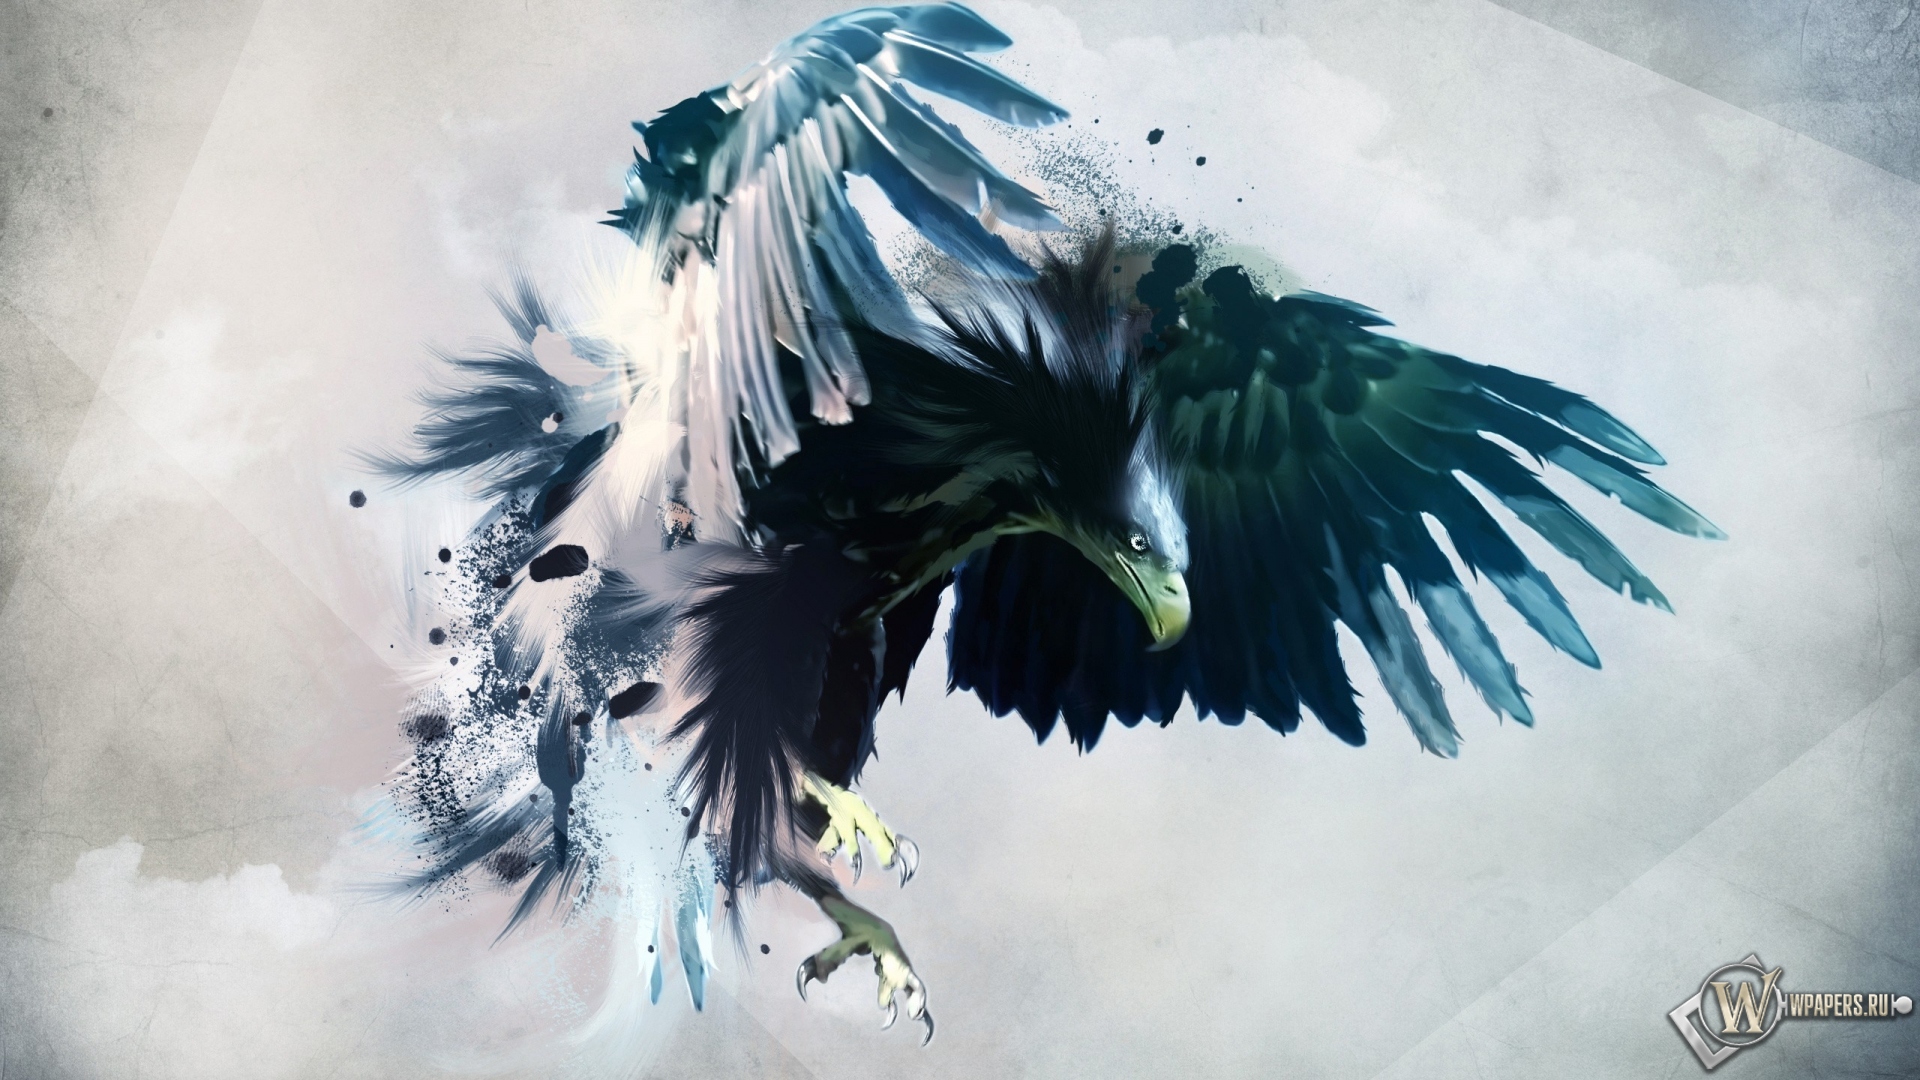 Artistic eagle 1920x1080